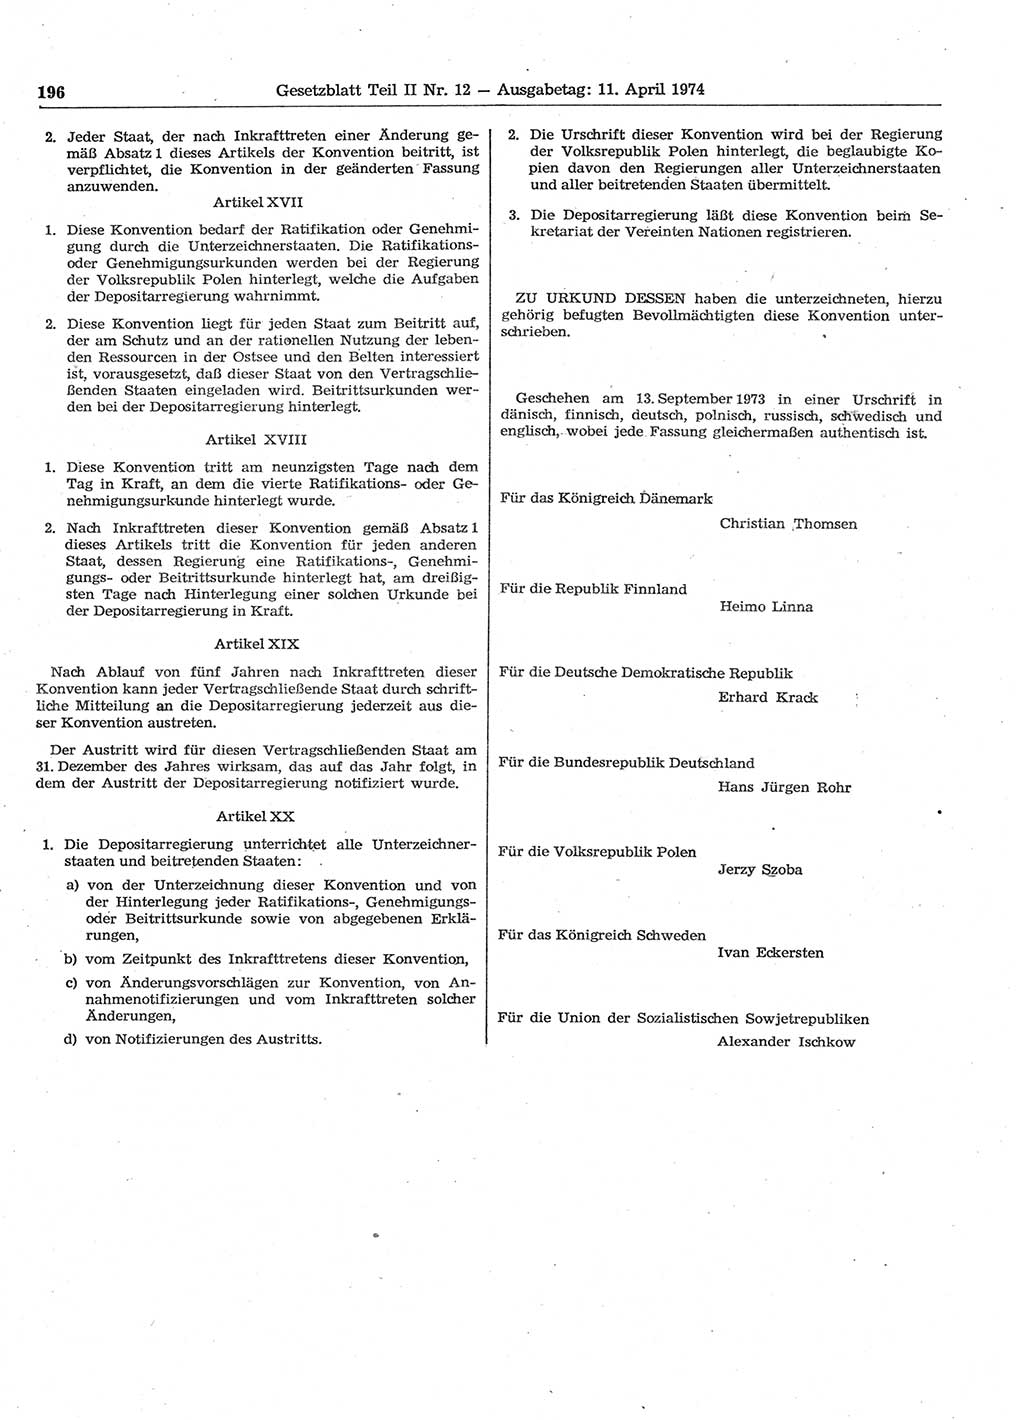 Gesetzblatt (GBl.) der Deutschen Demokratischen Republik (DDR) Teil ⅠⅠ 1974, Seite 196 (GBl. DDR ⅠⅠ 1974, S. 196)